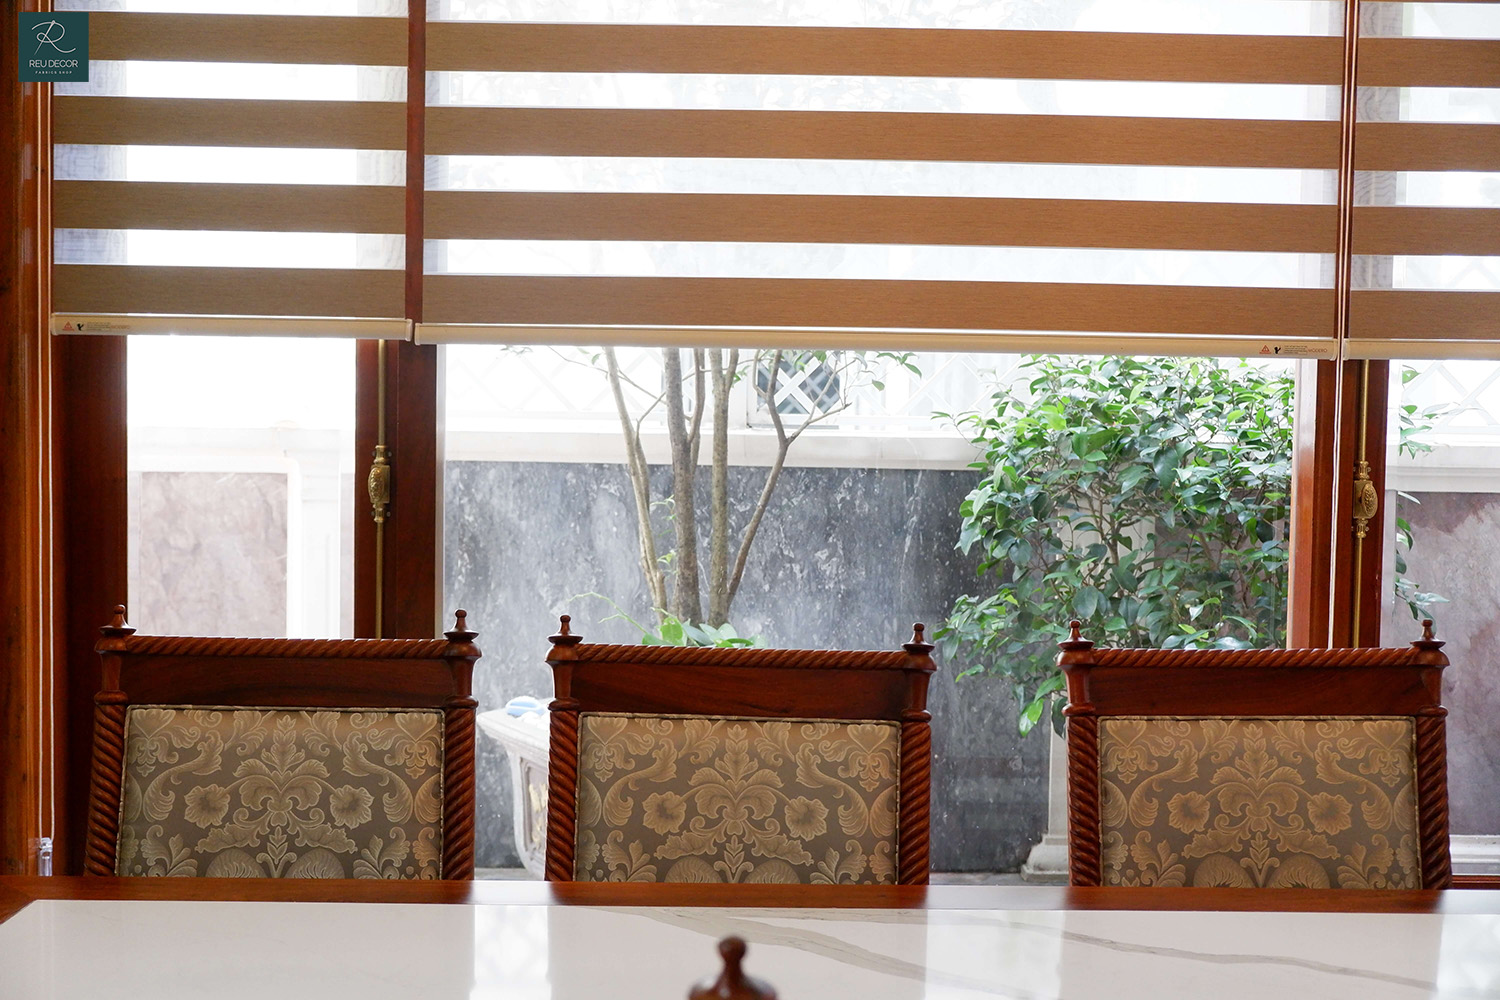 Cửa số phòng ăn được sử rèm cầu vồng có màu cam gỗ tương đồng với bộ bàn ghế, tạo cảm giác gần gũi